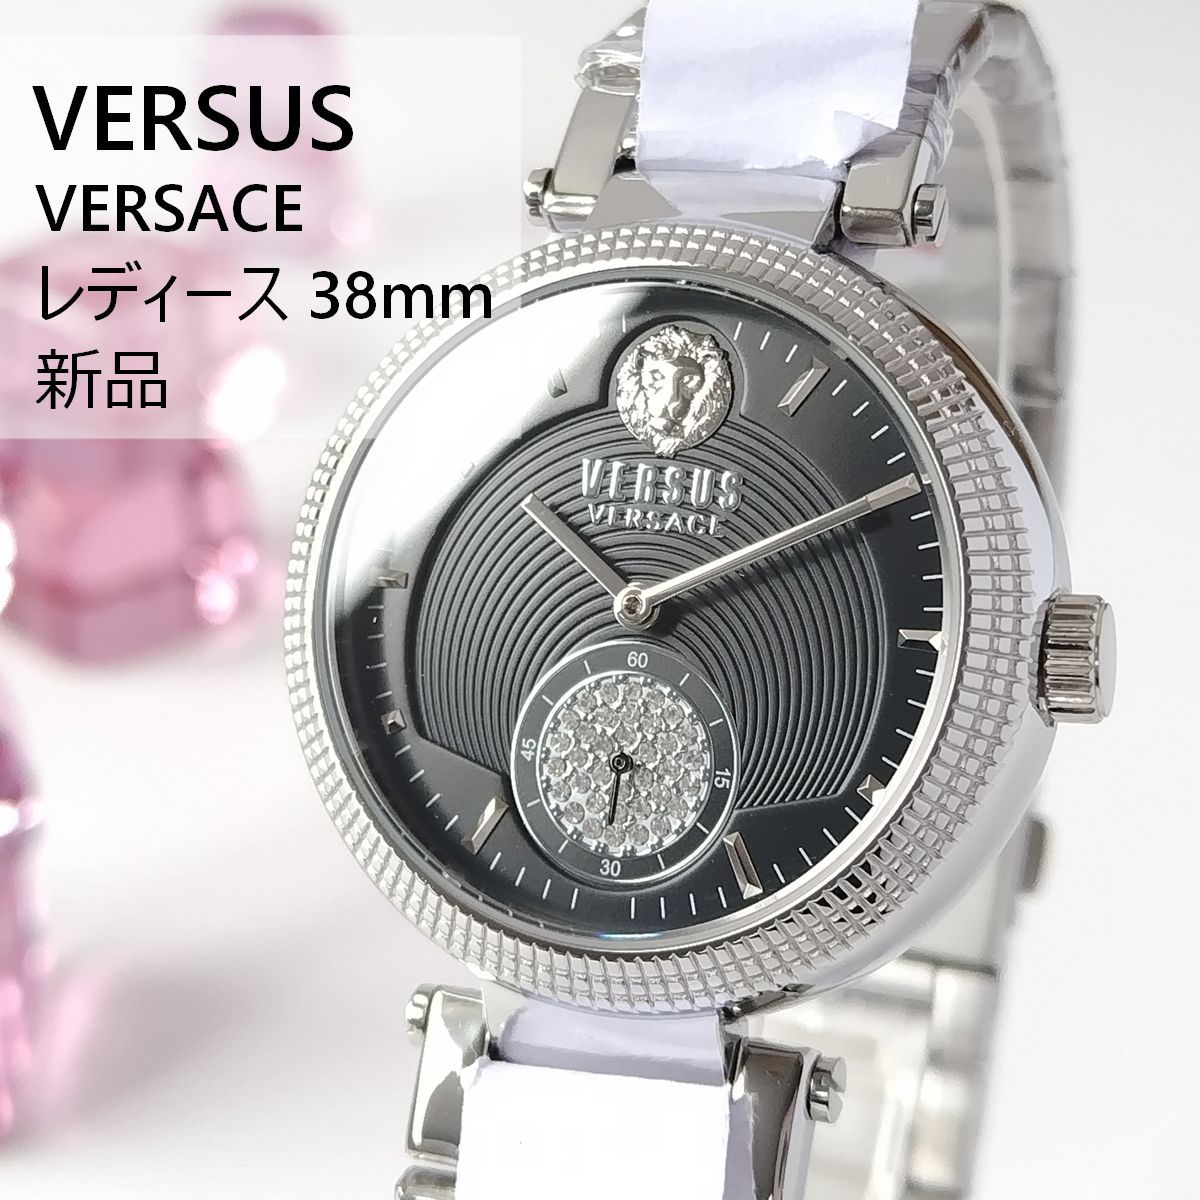 ブラック/シルバー新品レディース腕時計VERSUS VERSACEシンプル3針